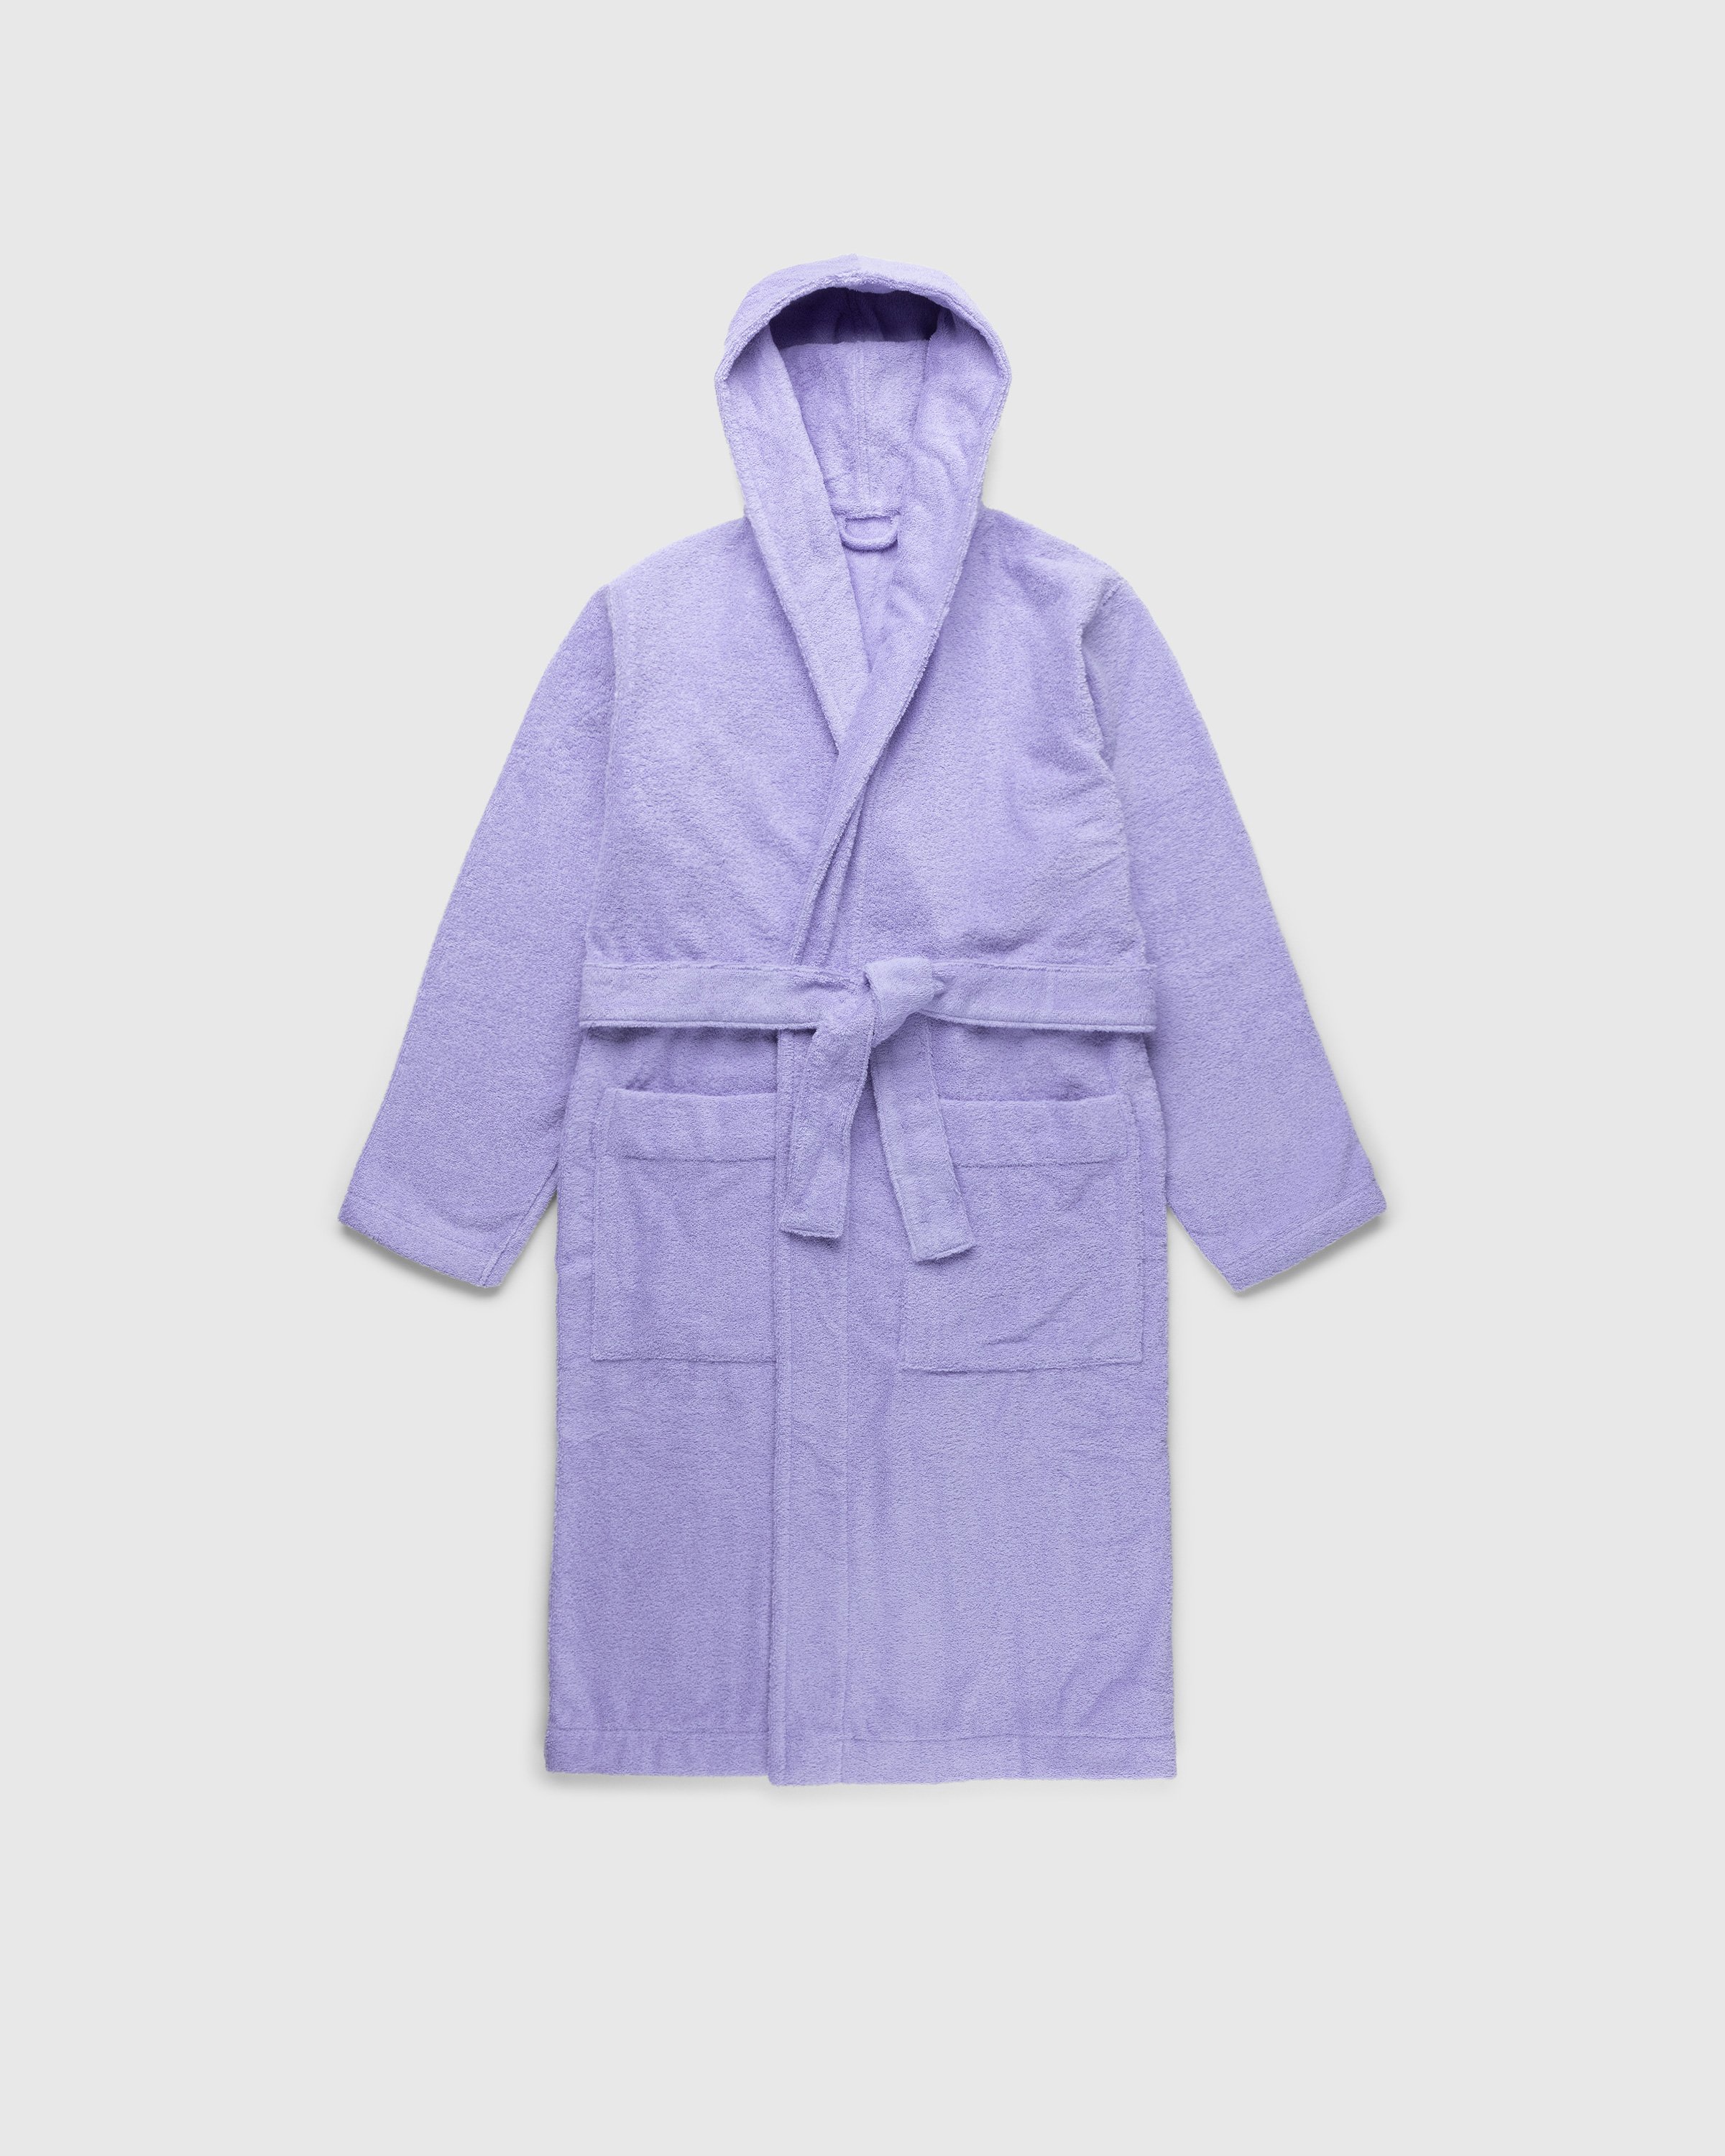 Tekla - Hooded Bathrobe Solid Lavender - Lifestyle - Purple - Image 1